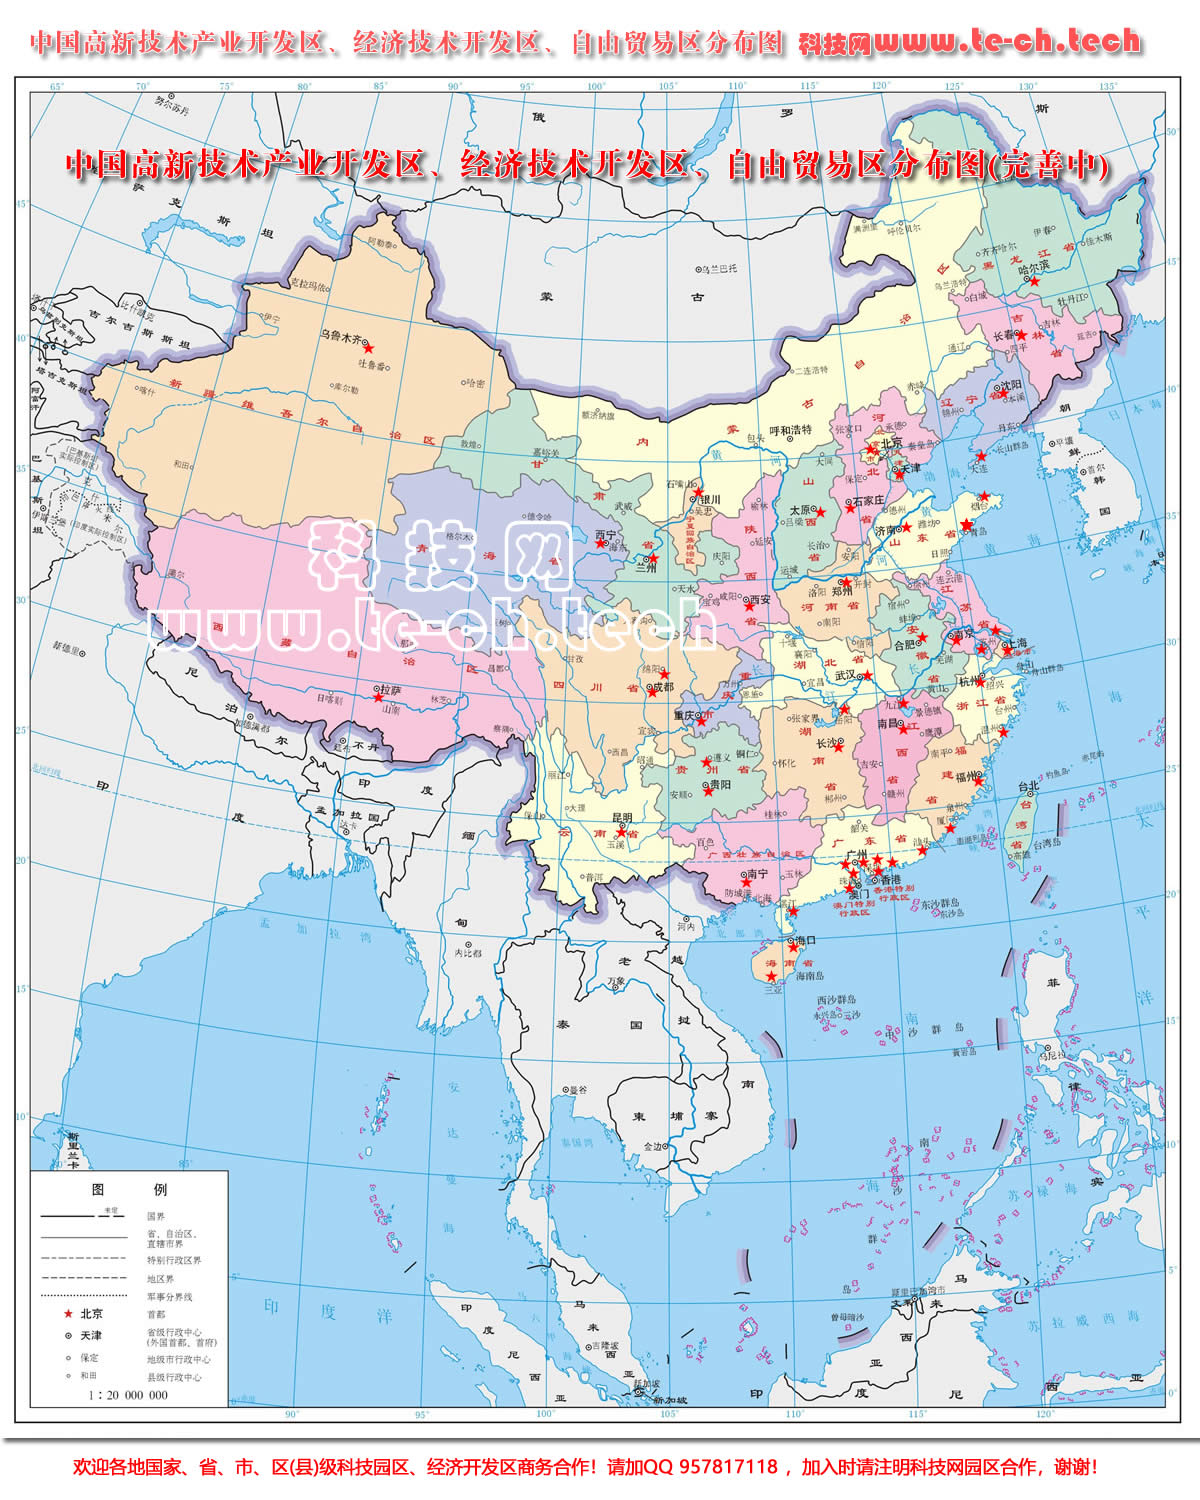 中国高新技术产业开发区、经济技术开发区、自由贸易区分布图(完善中)